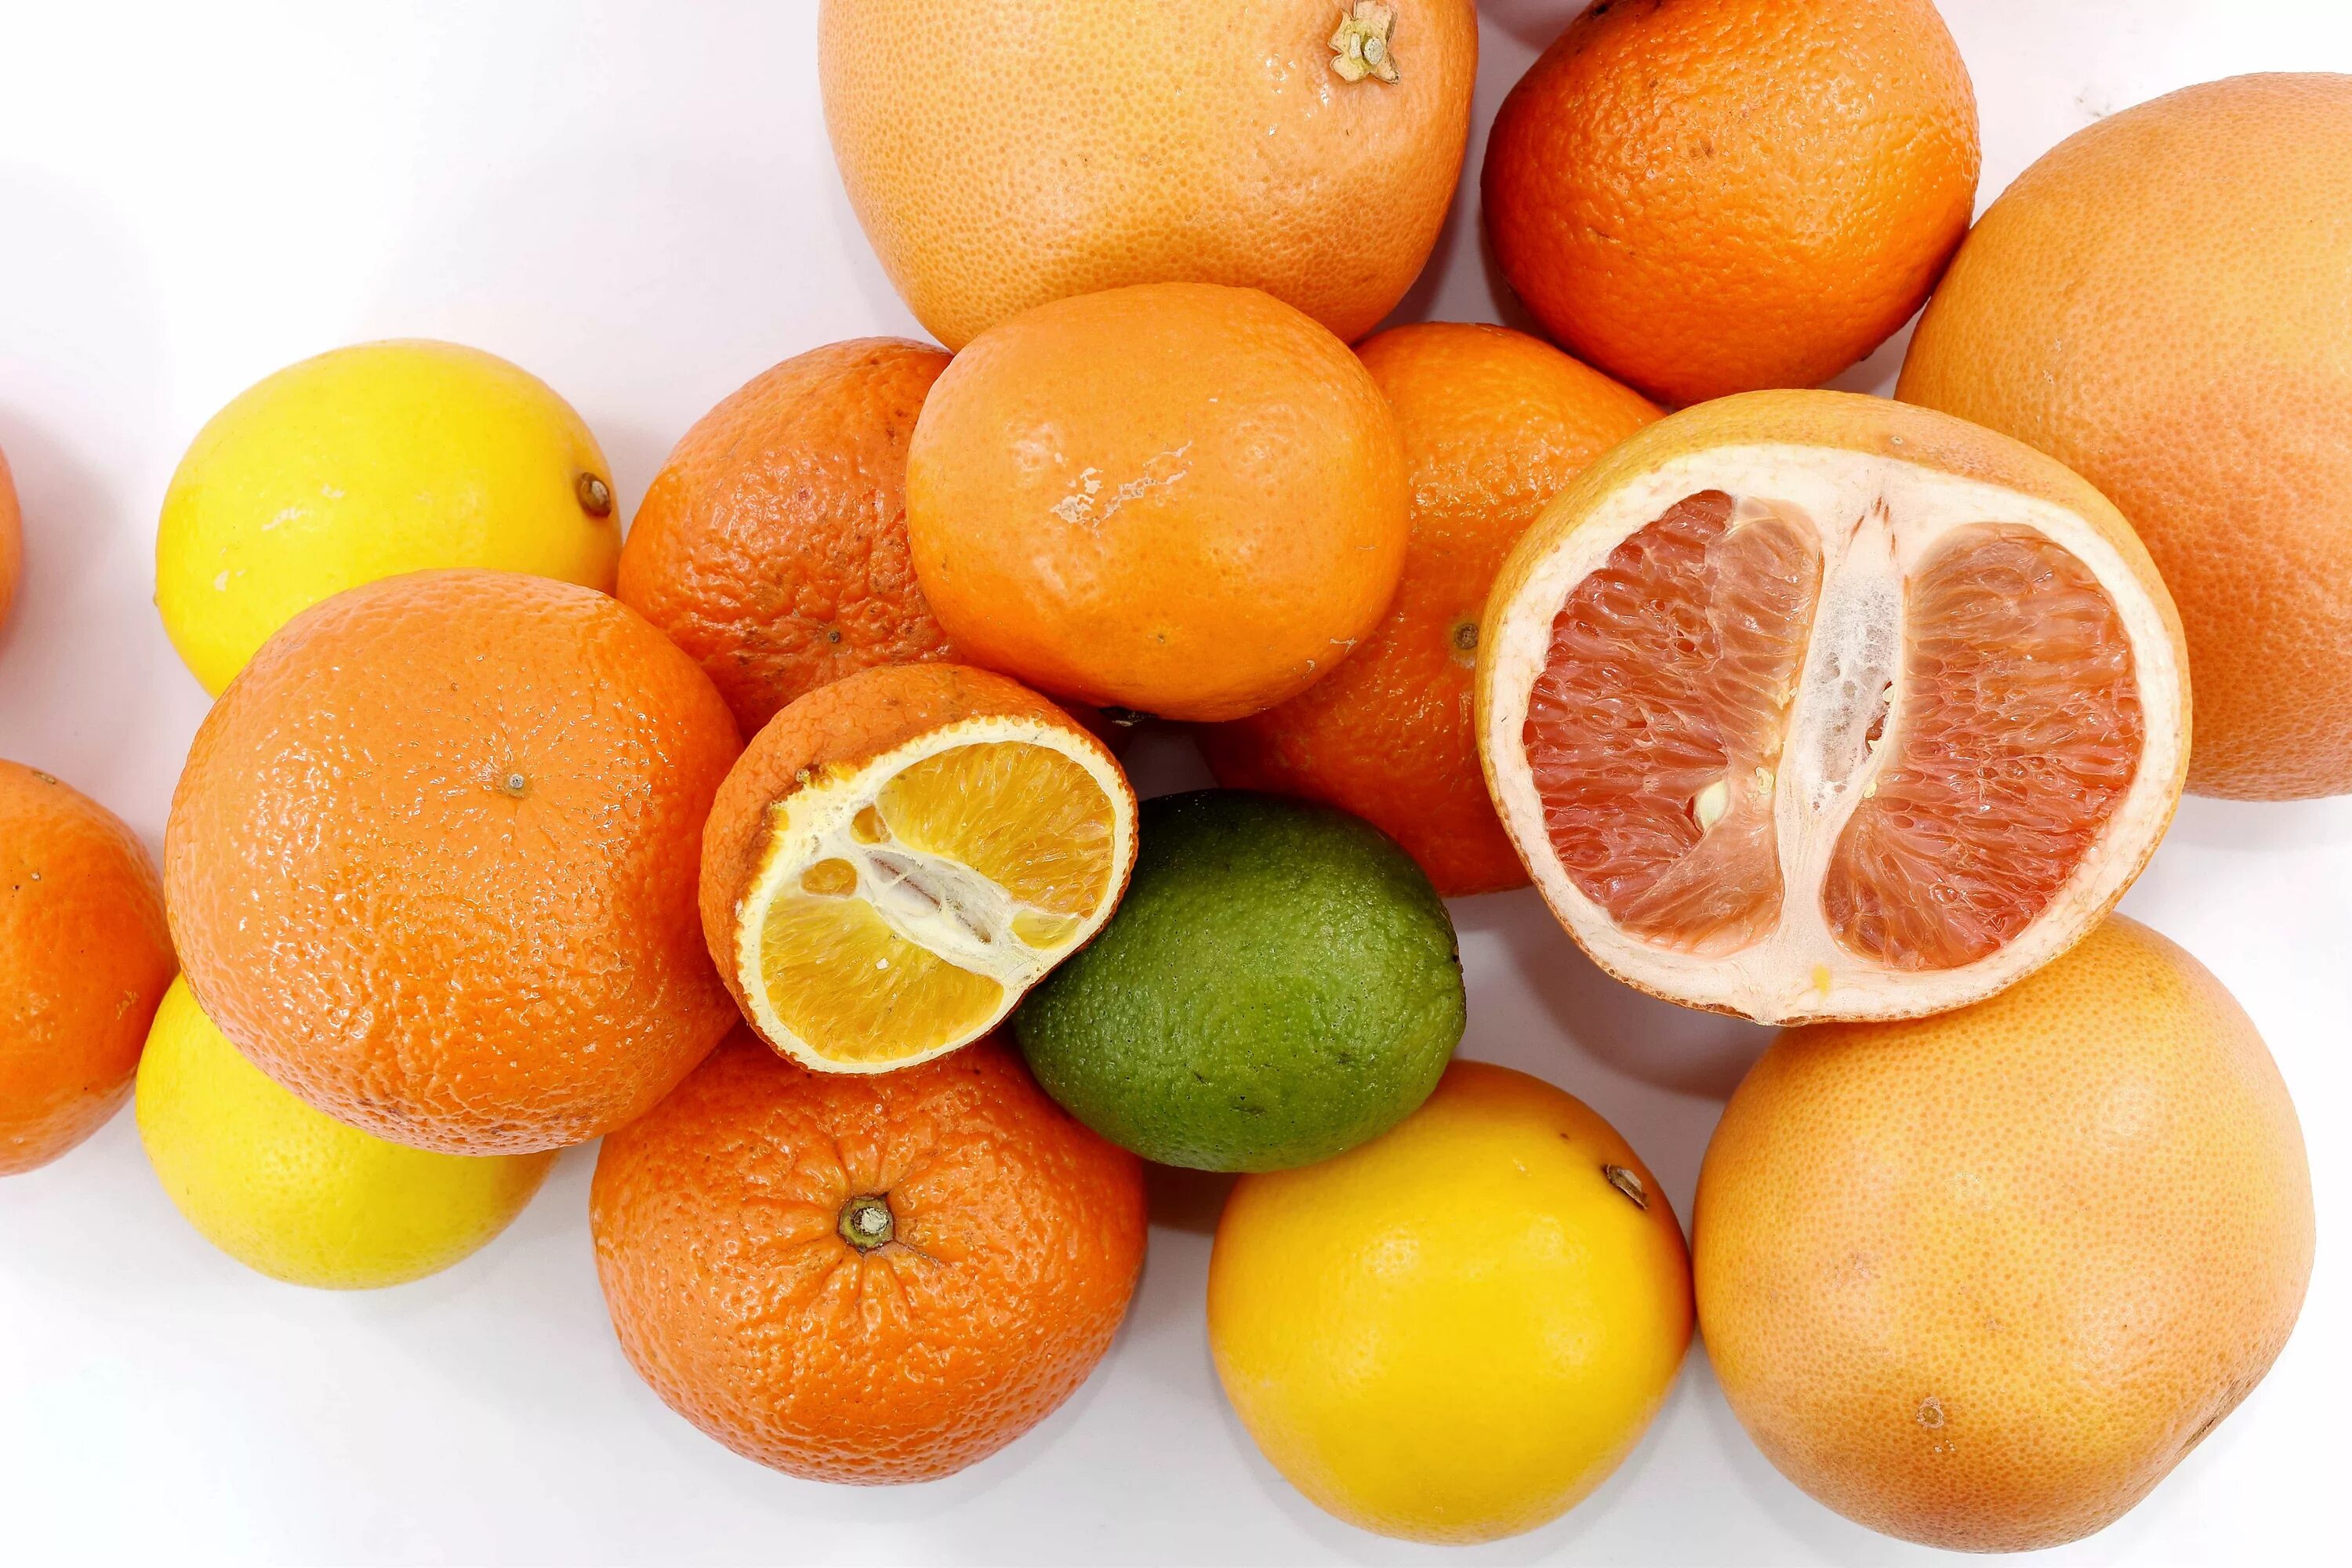 Цитрус мандарин Mandarine. Апельсин мандарин грейпфрут. Помело мандарин апельсин. Апельсин грейпфрут помело. Цитрусовые фрукты это